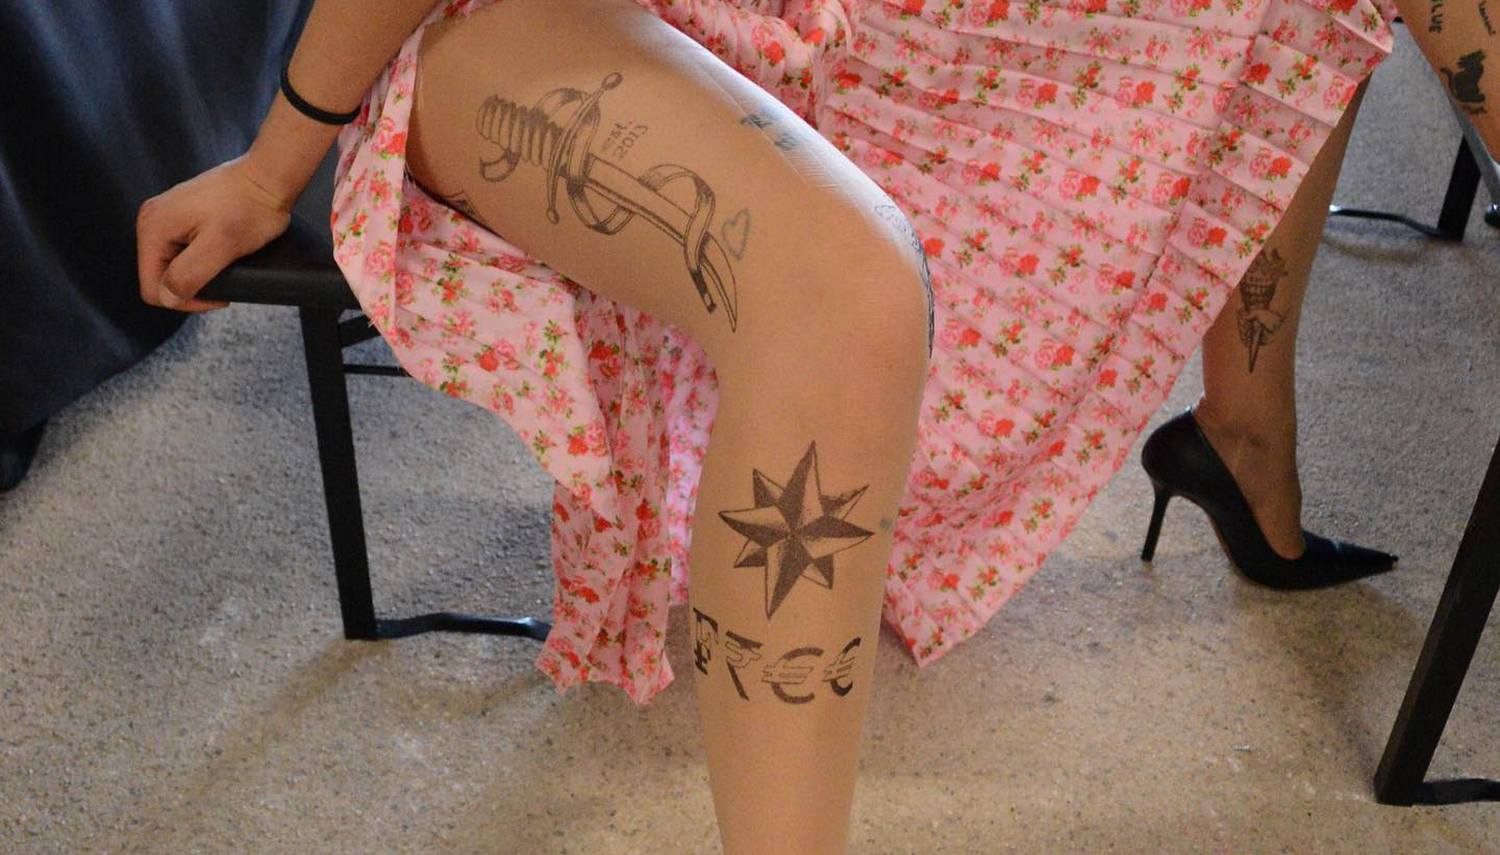 Худощавая красотка с татуировкой на ноге берет в рот резиновую игрушку и показывает прищепки на сосочках